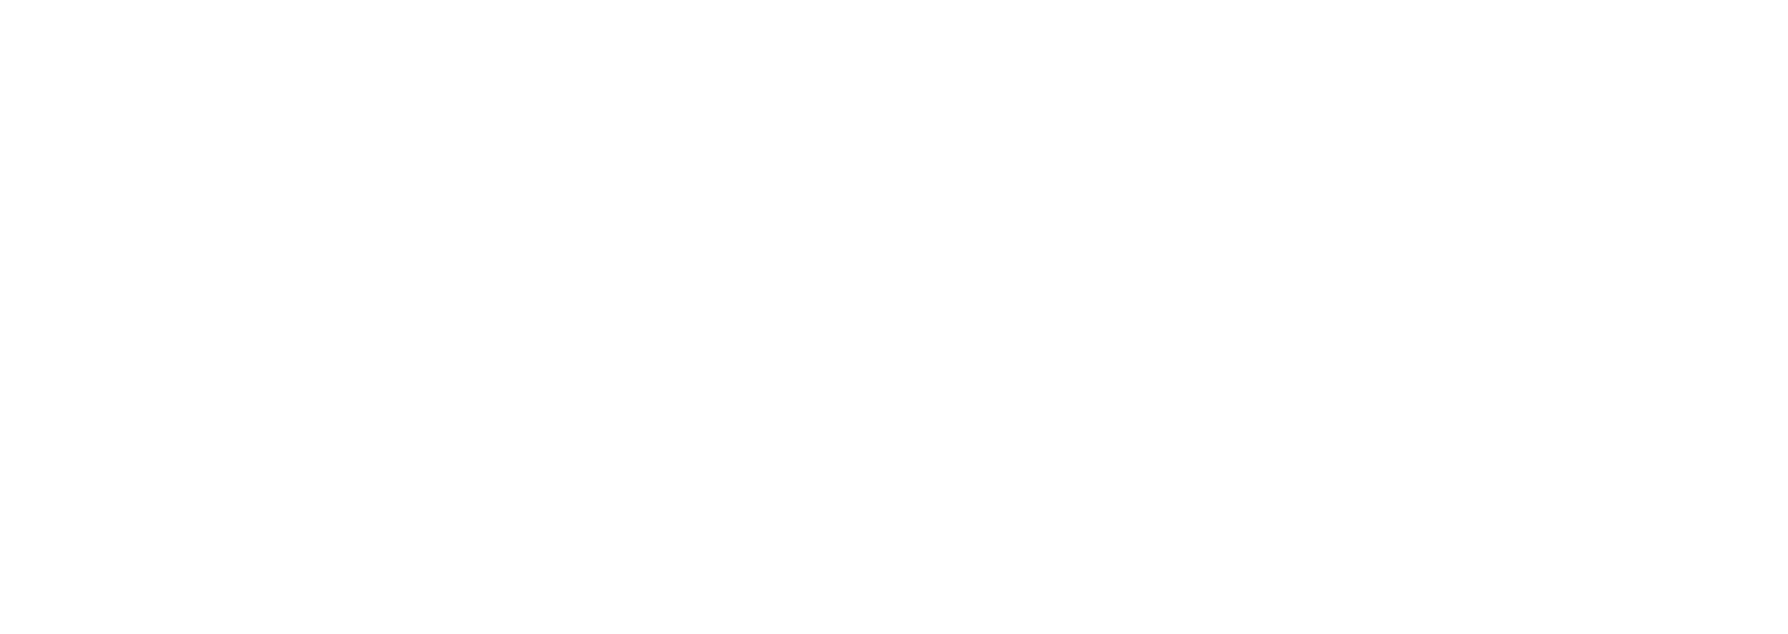 Stichting SportParkbeheer Beuningen logo wit